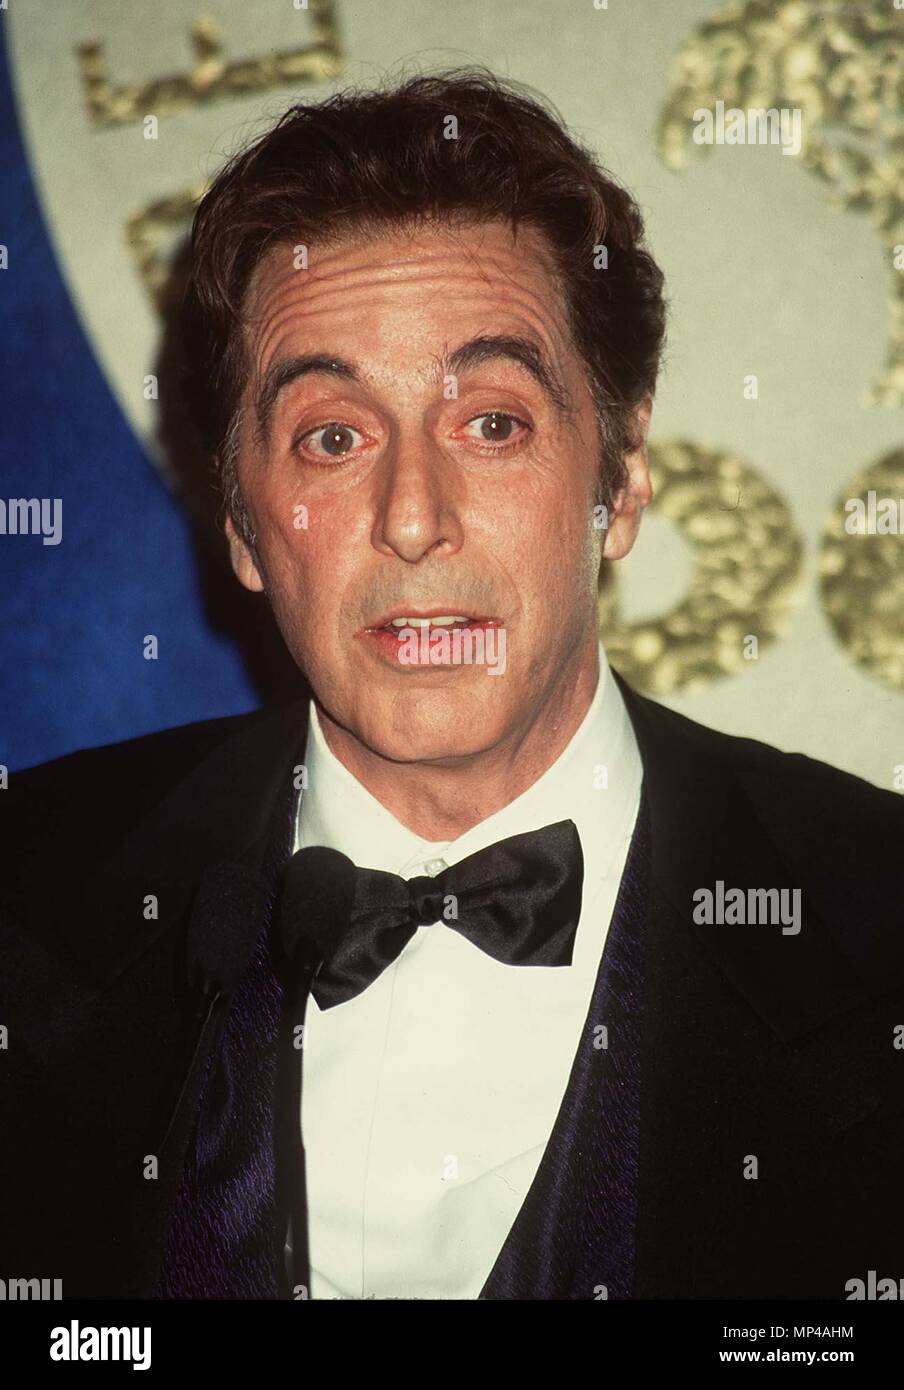 Al Pacino ========================= Al Pacino-10 Event in Hollywood Leben - Kalifornien, Red Carpet Event, Vertikal, USA, Filmindustrie, Prominente, Fotografie, Bestof, Kunst, Kultur und Unterhaltung, Topix prominente Mode, Besten, Hollywood Leben, Event in Hollywood Leben - Kalifornien, Roter Teppich und backstage, Film Stars, TV Stars, Musik, Promis, Topix, Headshot 1993 bis 1999, Anfrage tsuni@Gamma-USA.com, Kredit Tsuni/USA,, vertikal, eine Person, Stockfoto